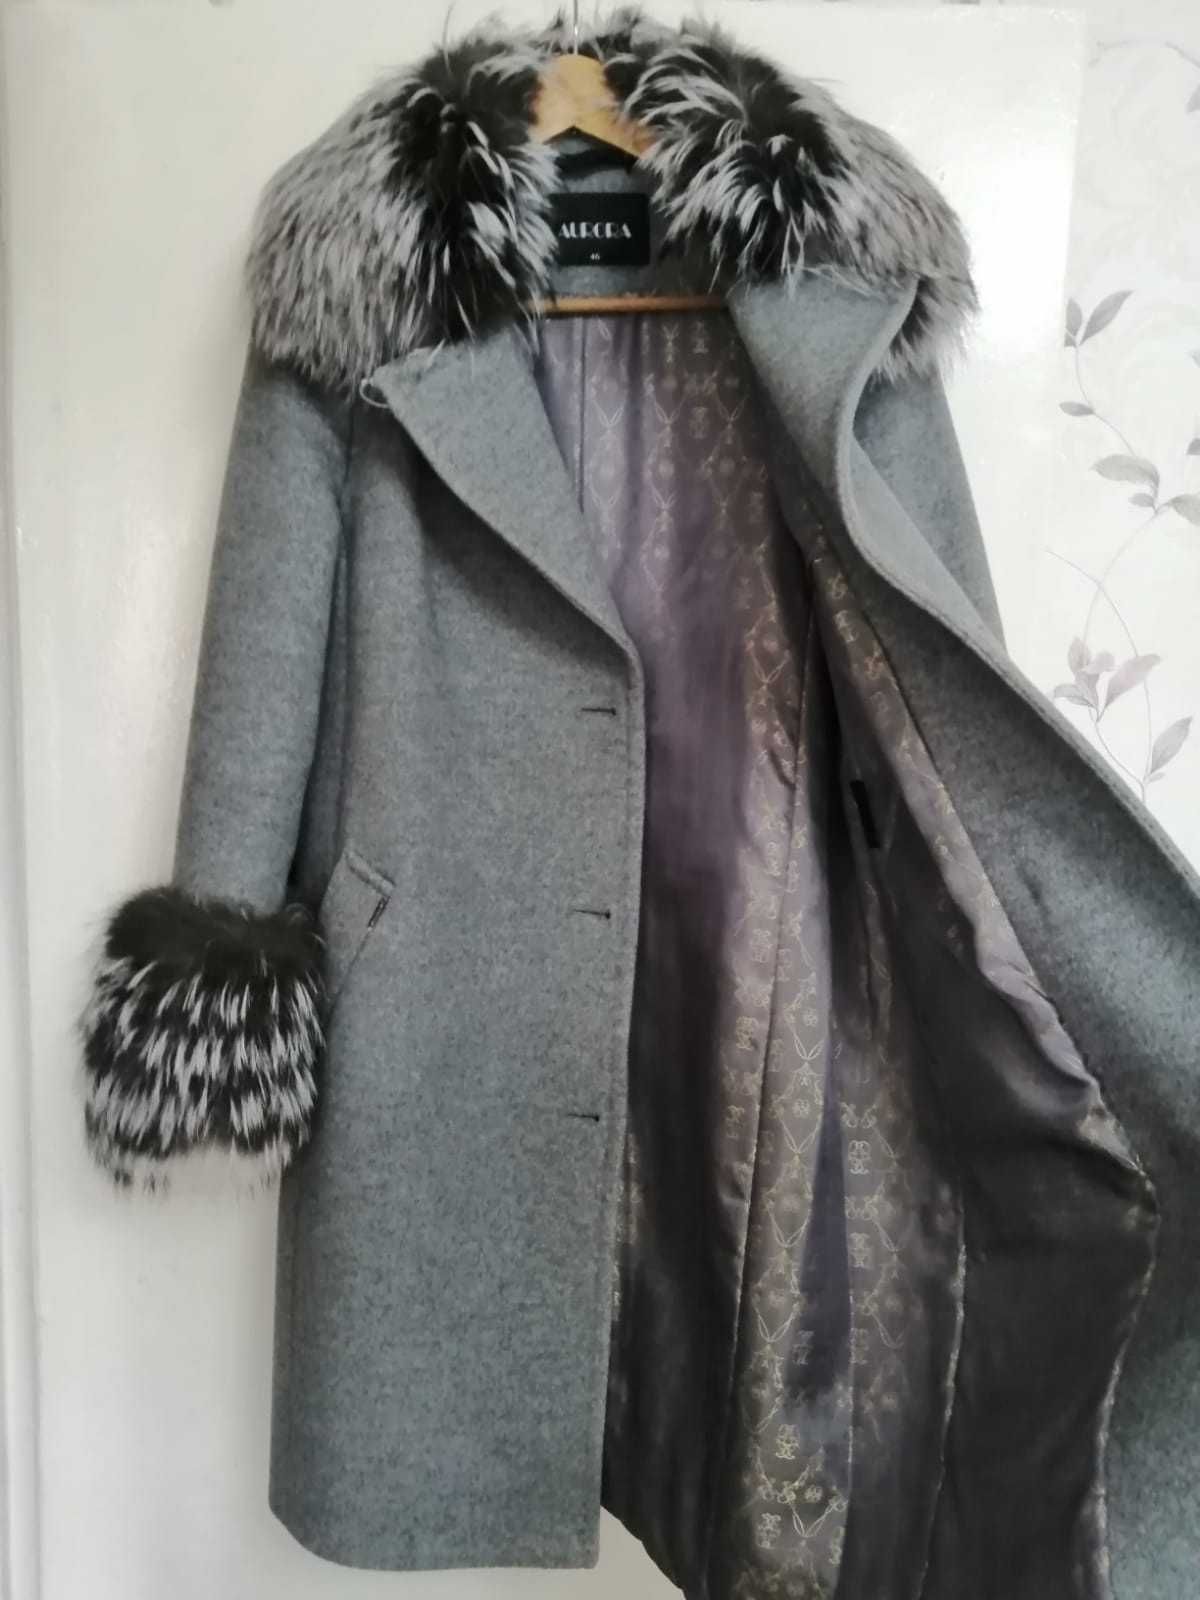 Продам зимнее пальто с натуральным мехом